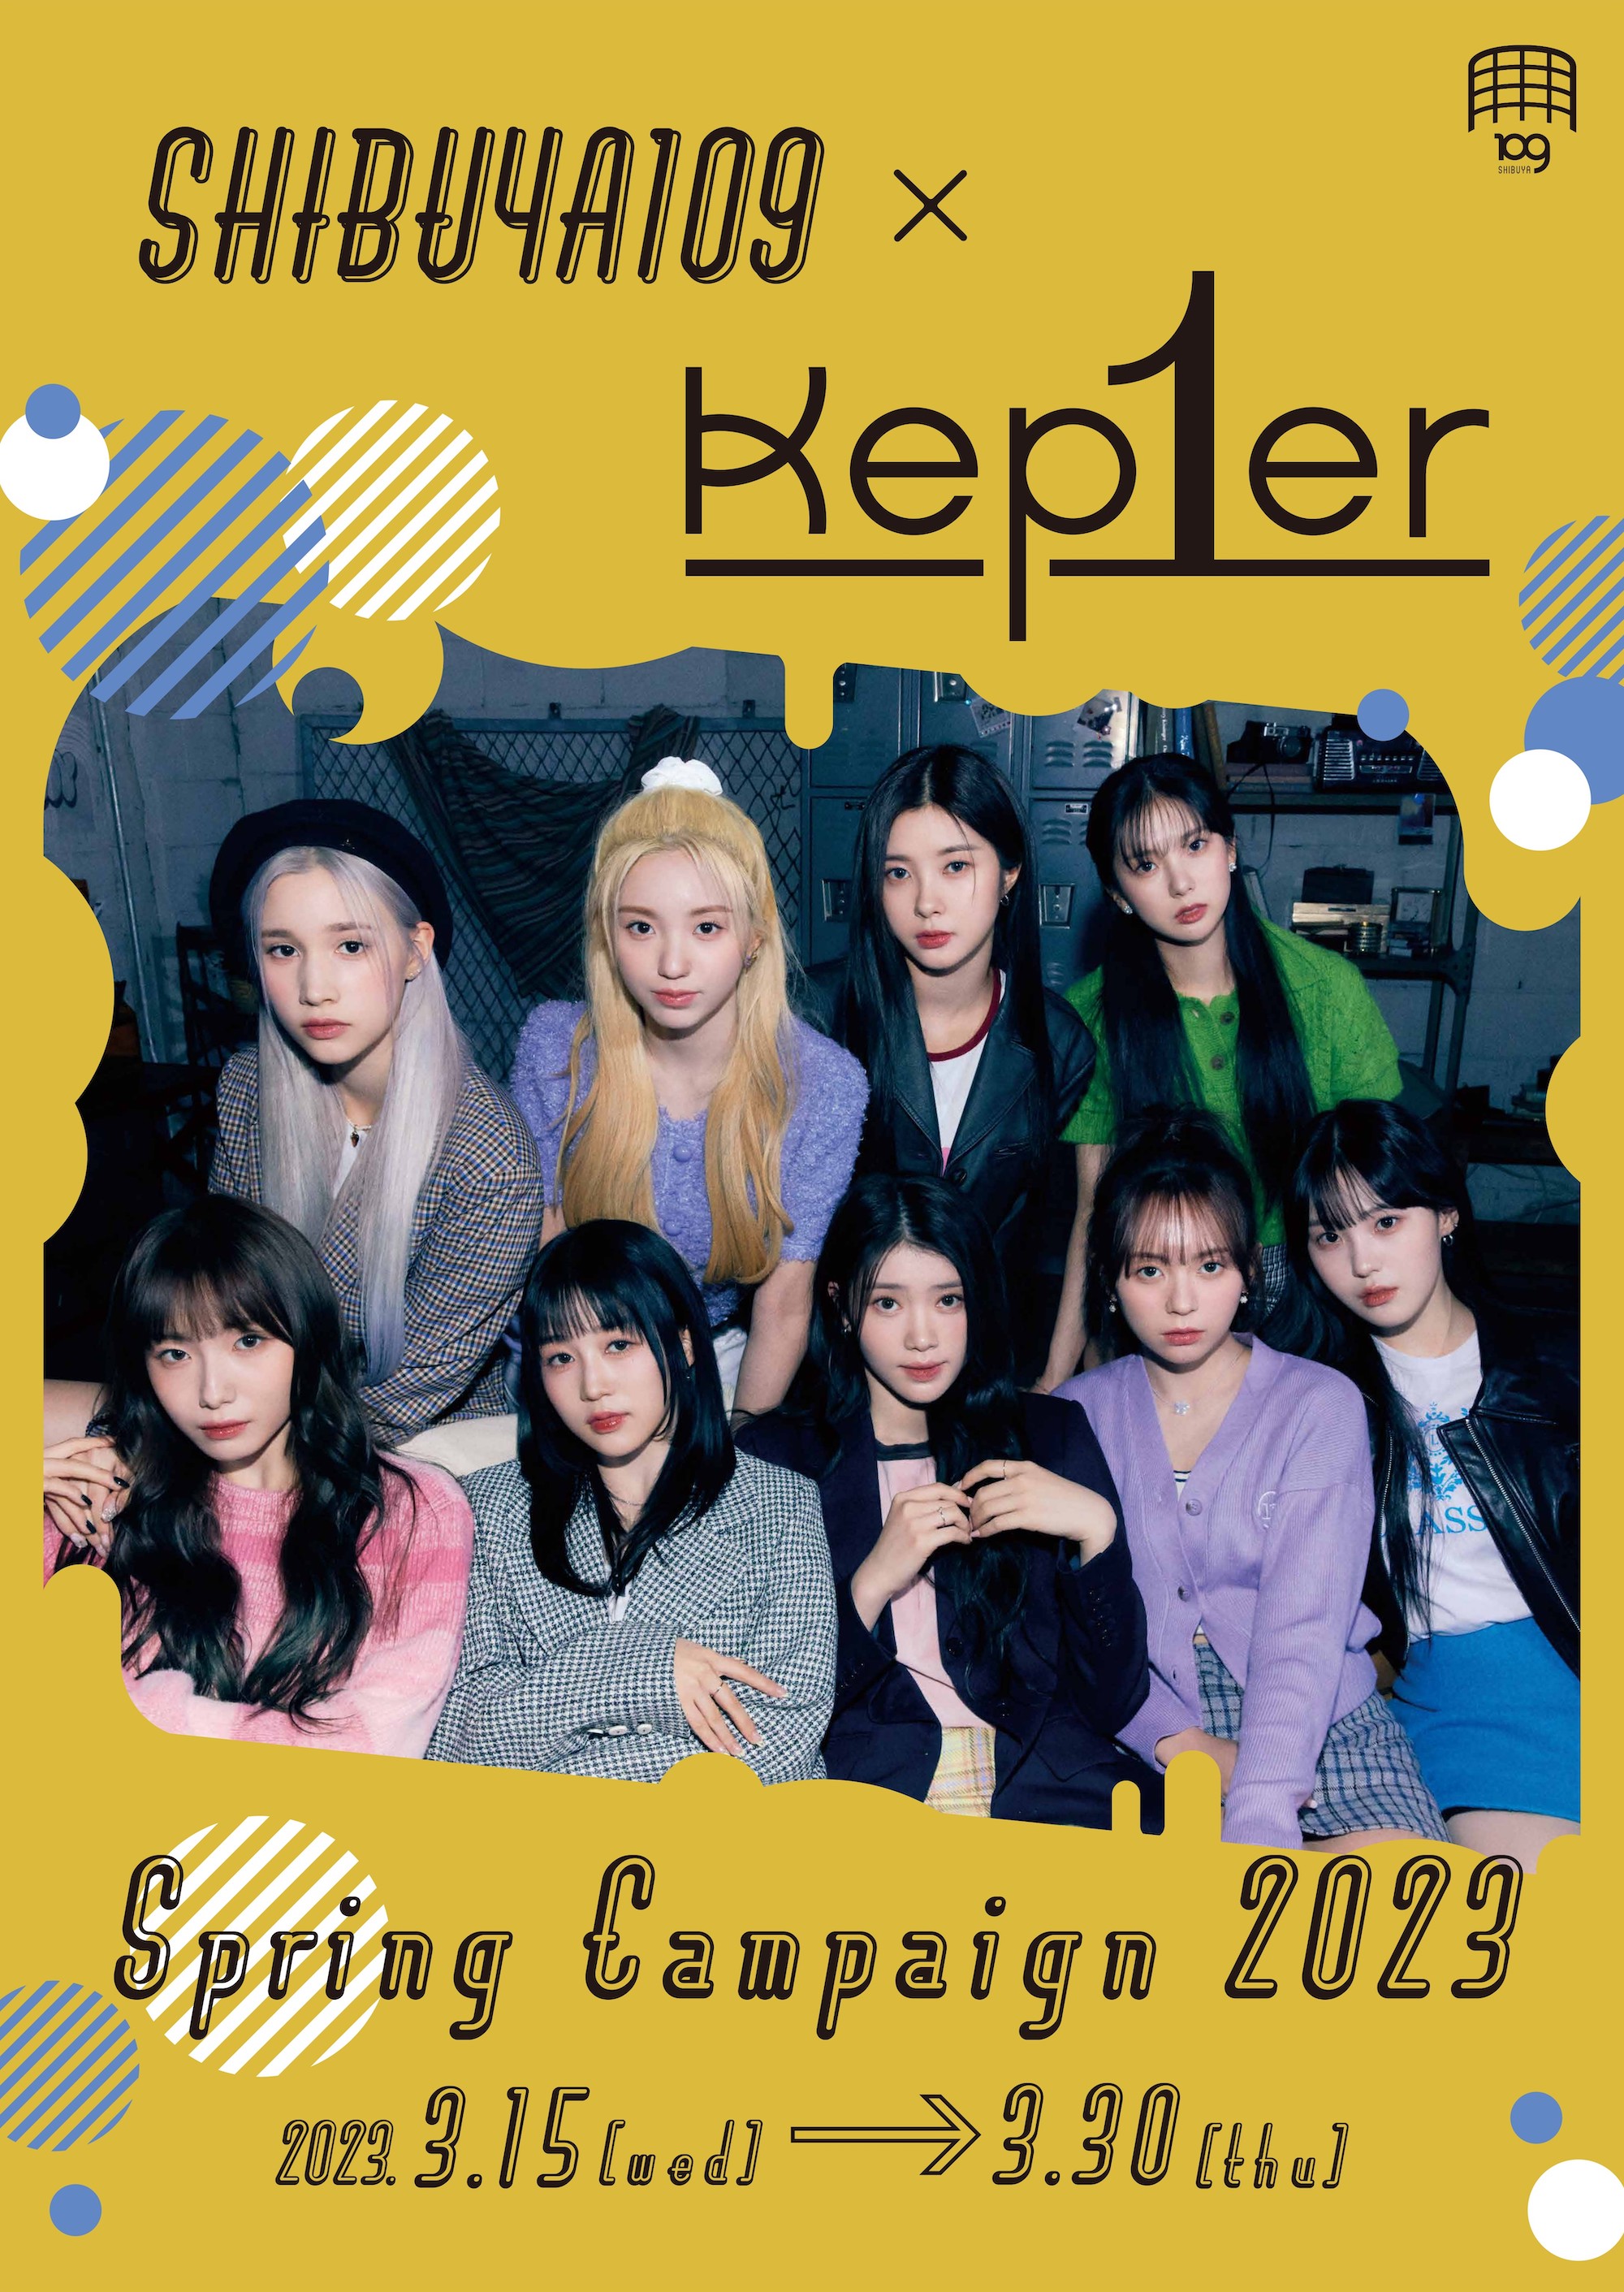 グローバルガールズグループ・Kep1erとSHIBUYA109がコラボレーション♡『SHIBUYA109 × Kep1er Spring Campaign 2023』開催決定